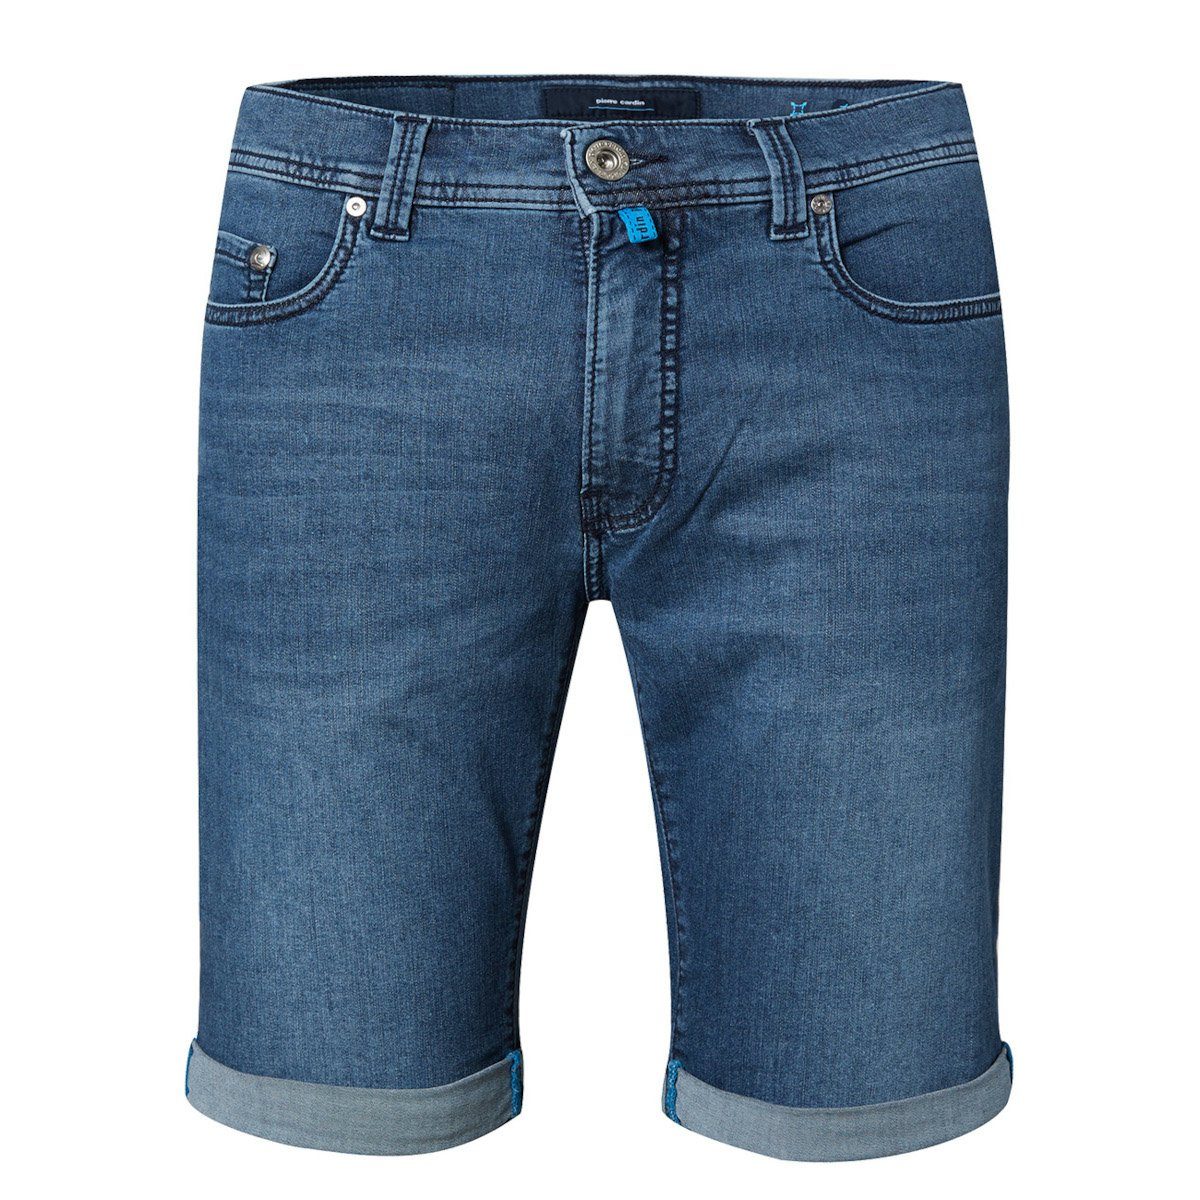 Pierre Cardin Shorts Pierre Cardin Shorts FUTURE FLEX 34520 blue fashion (6828)